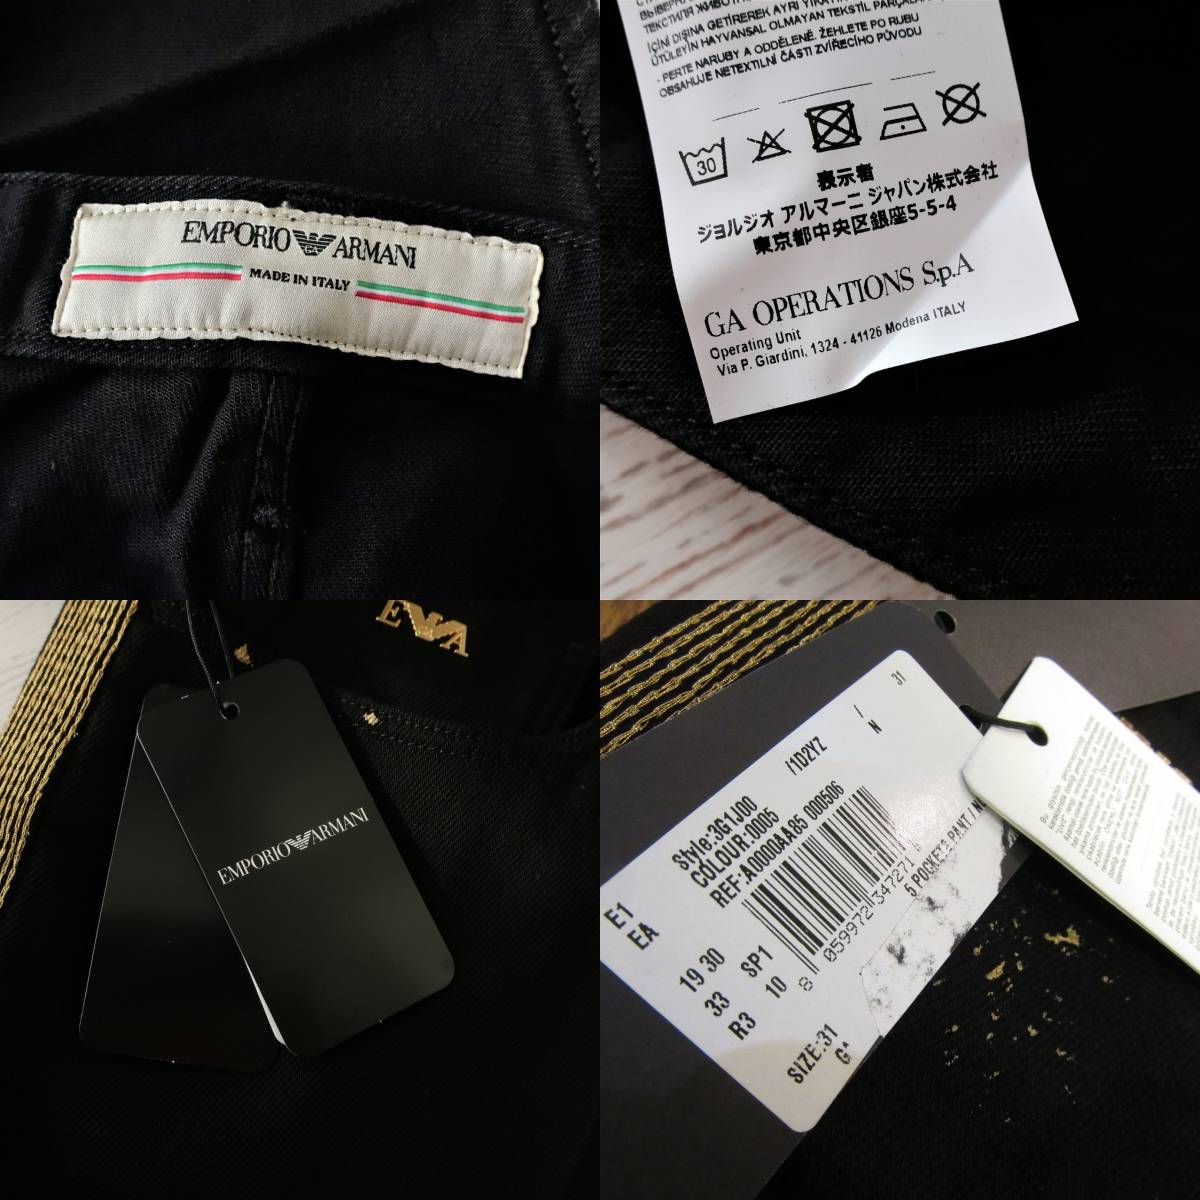 新品 EMPORIO ARMANI エンポリオアルマーニ イタリア製 コレクション デニム ジーンズ 黒 金 ブラック ゴールド メンズ W31  Mサイズ